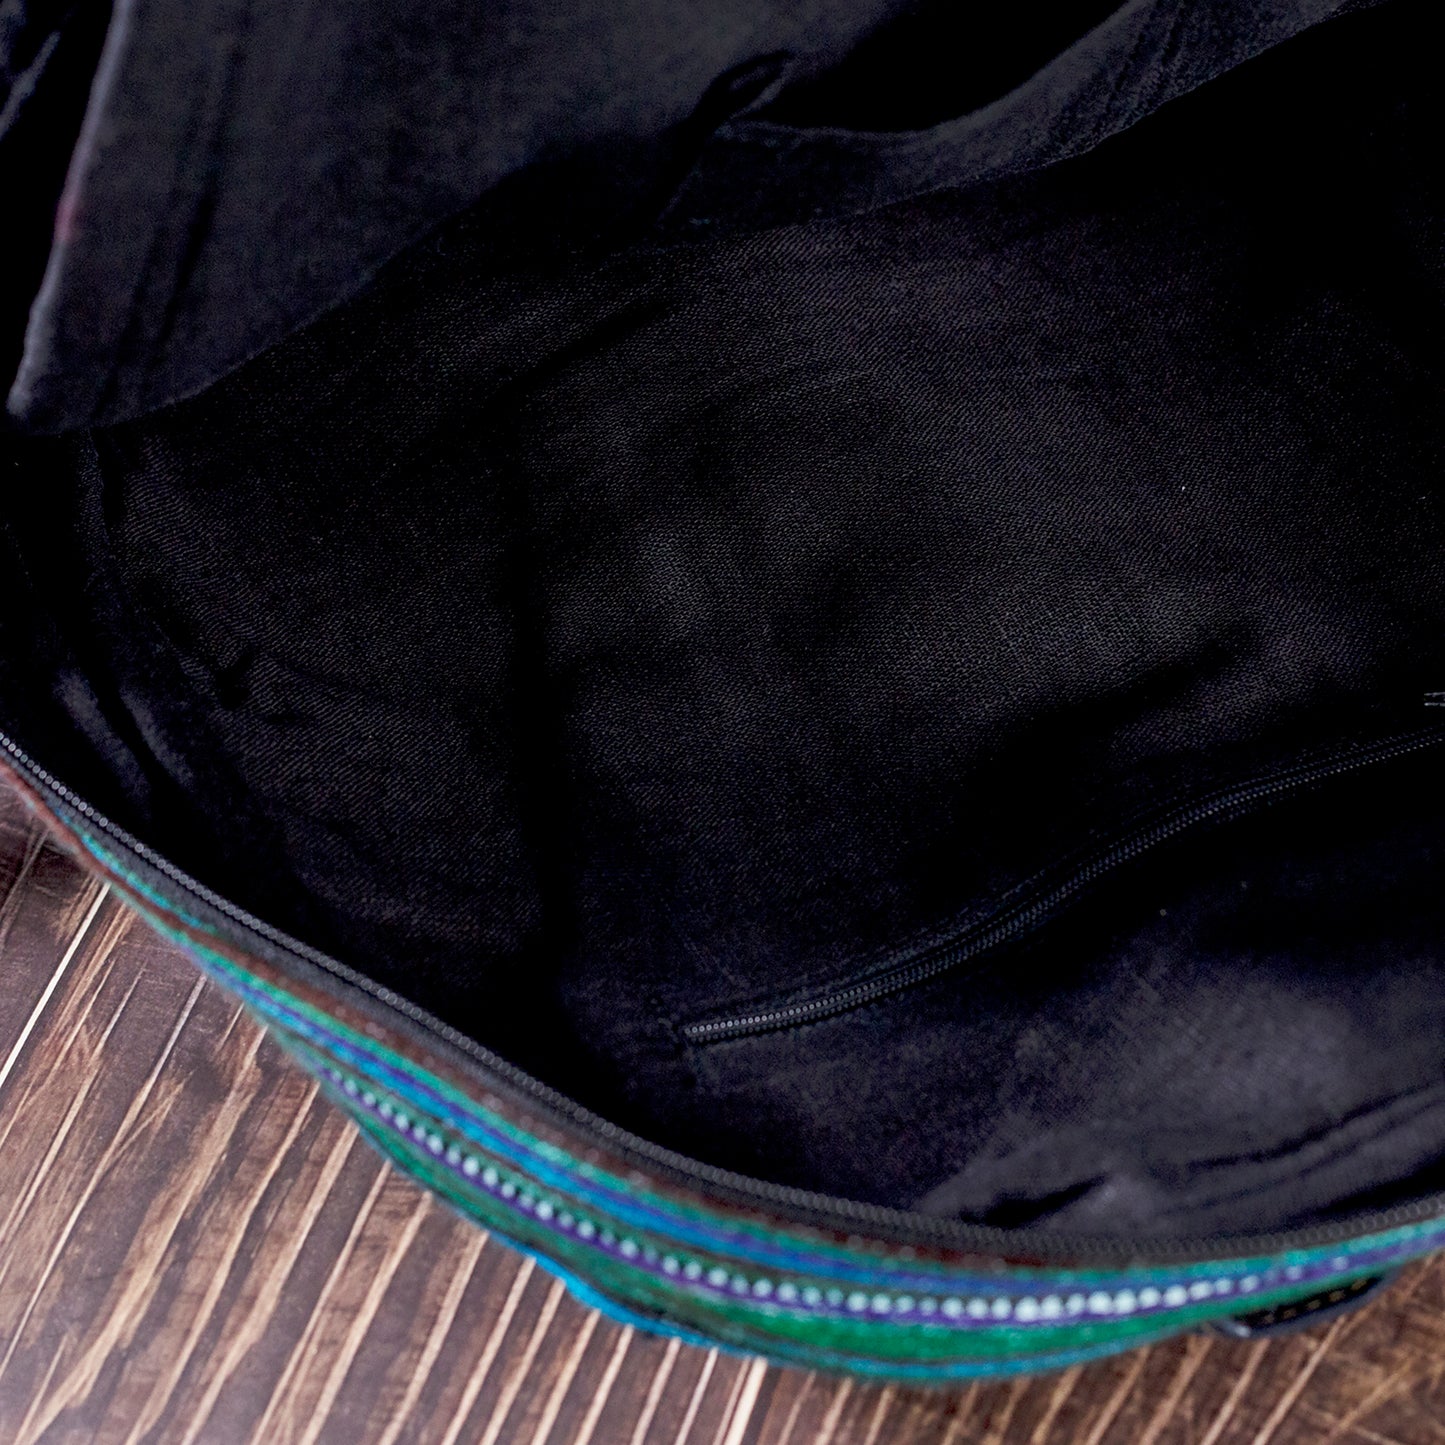 Stor ryggsäck, rund ficka framtill, blått handbroderityg, svart konstläderkant